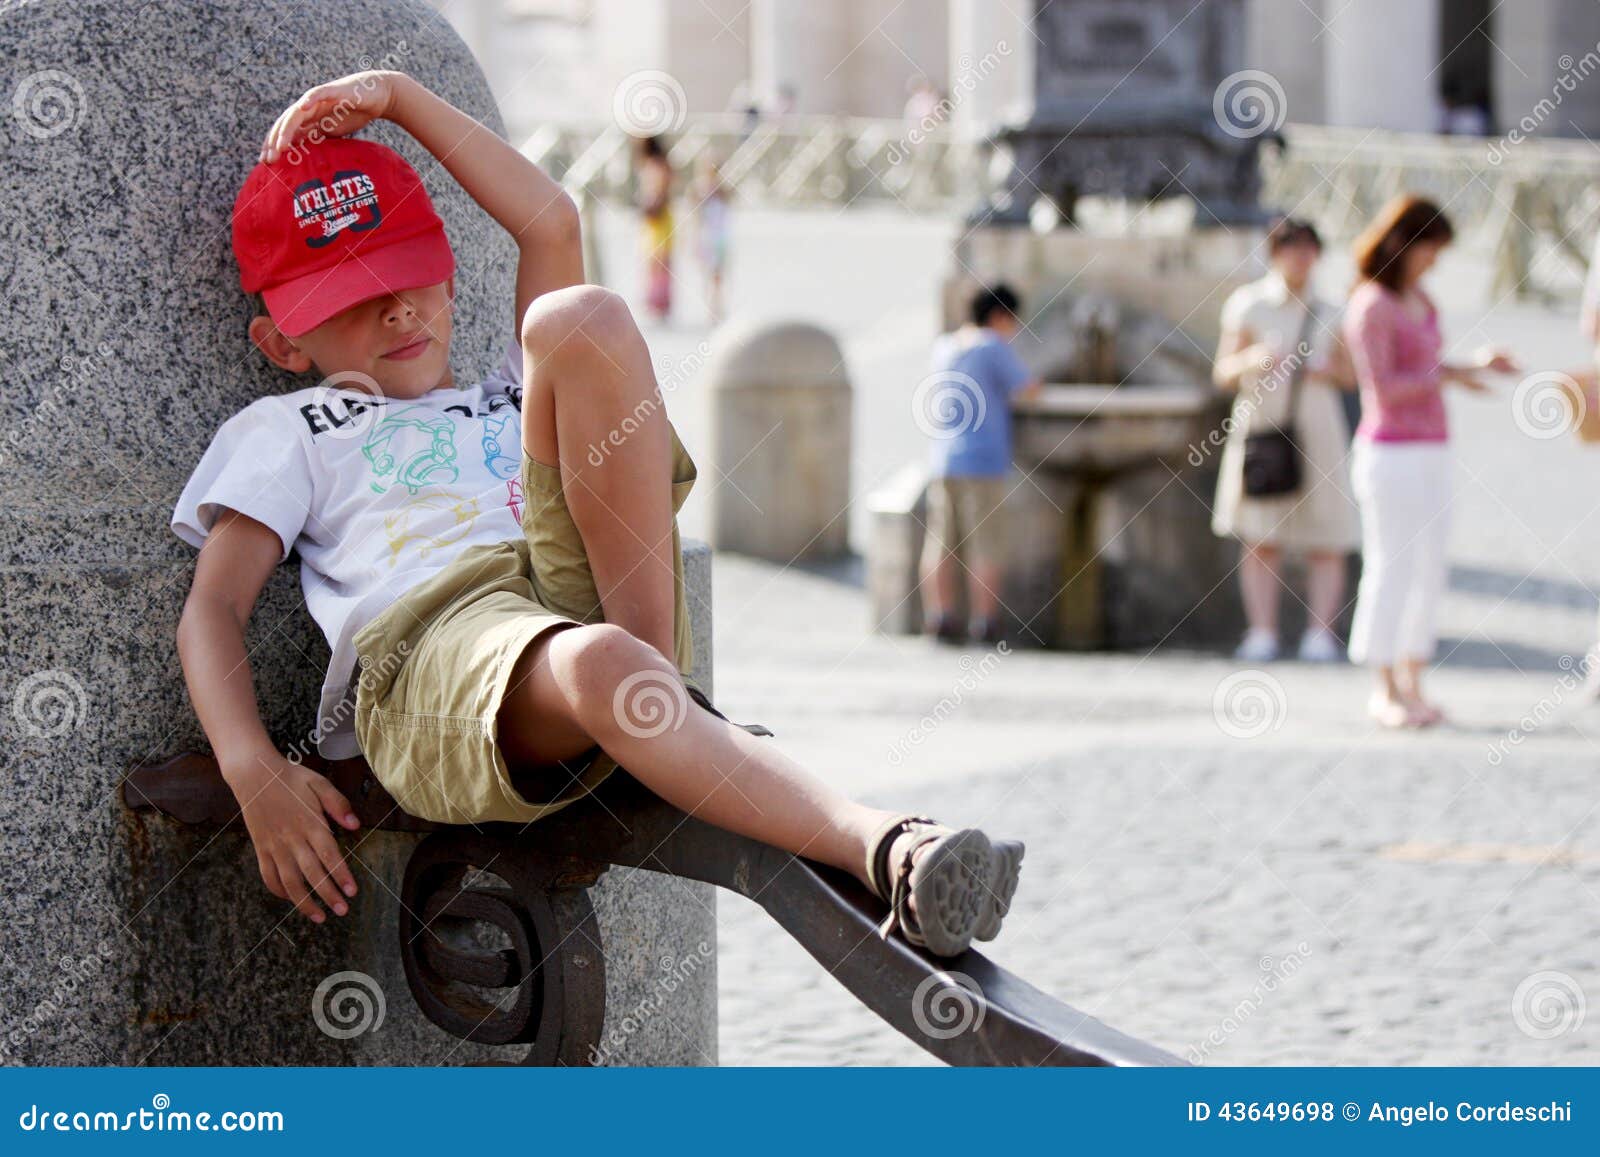 小旅游休息. 休息在梵蒂冈(罗马)的一个喷泉附近的一个小游人